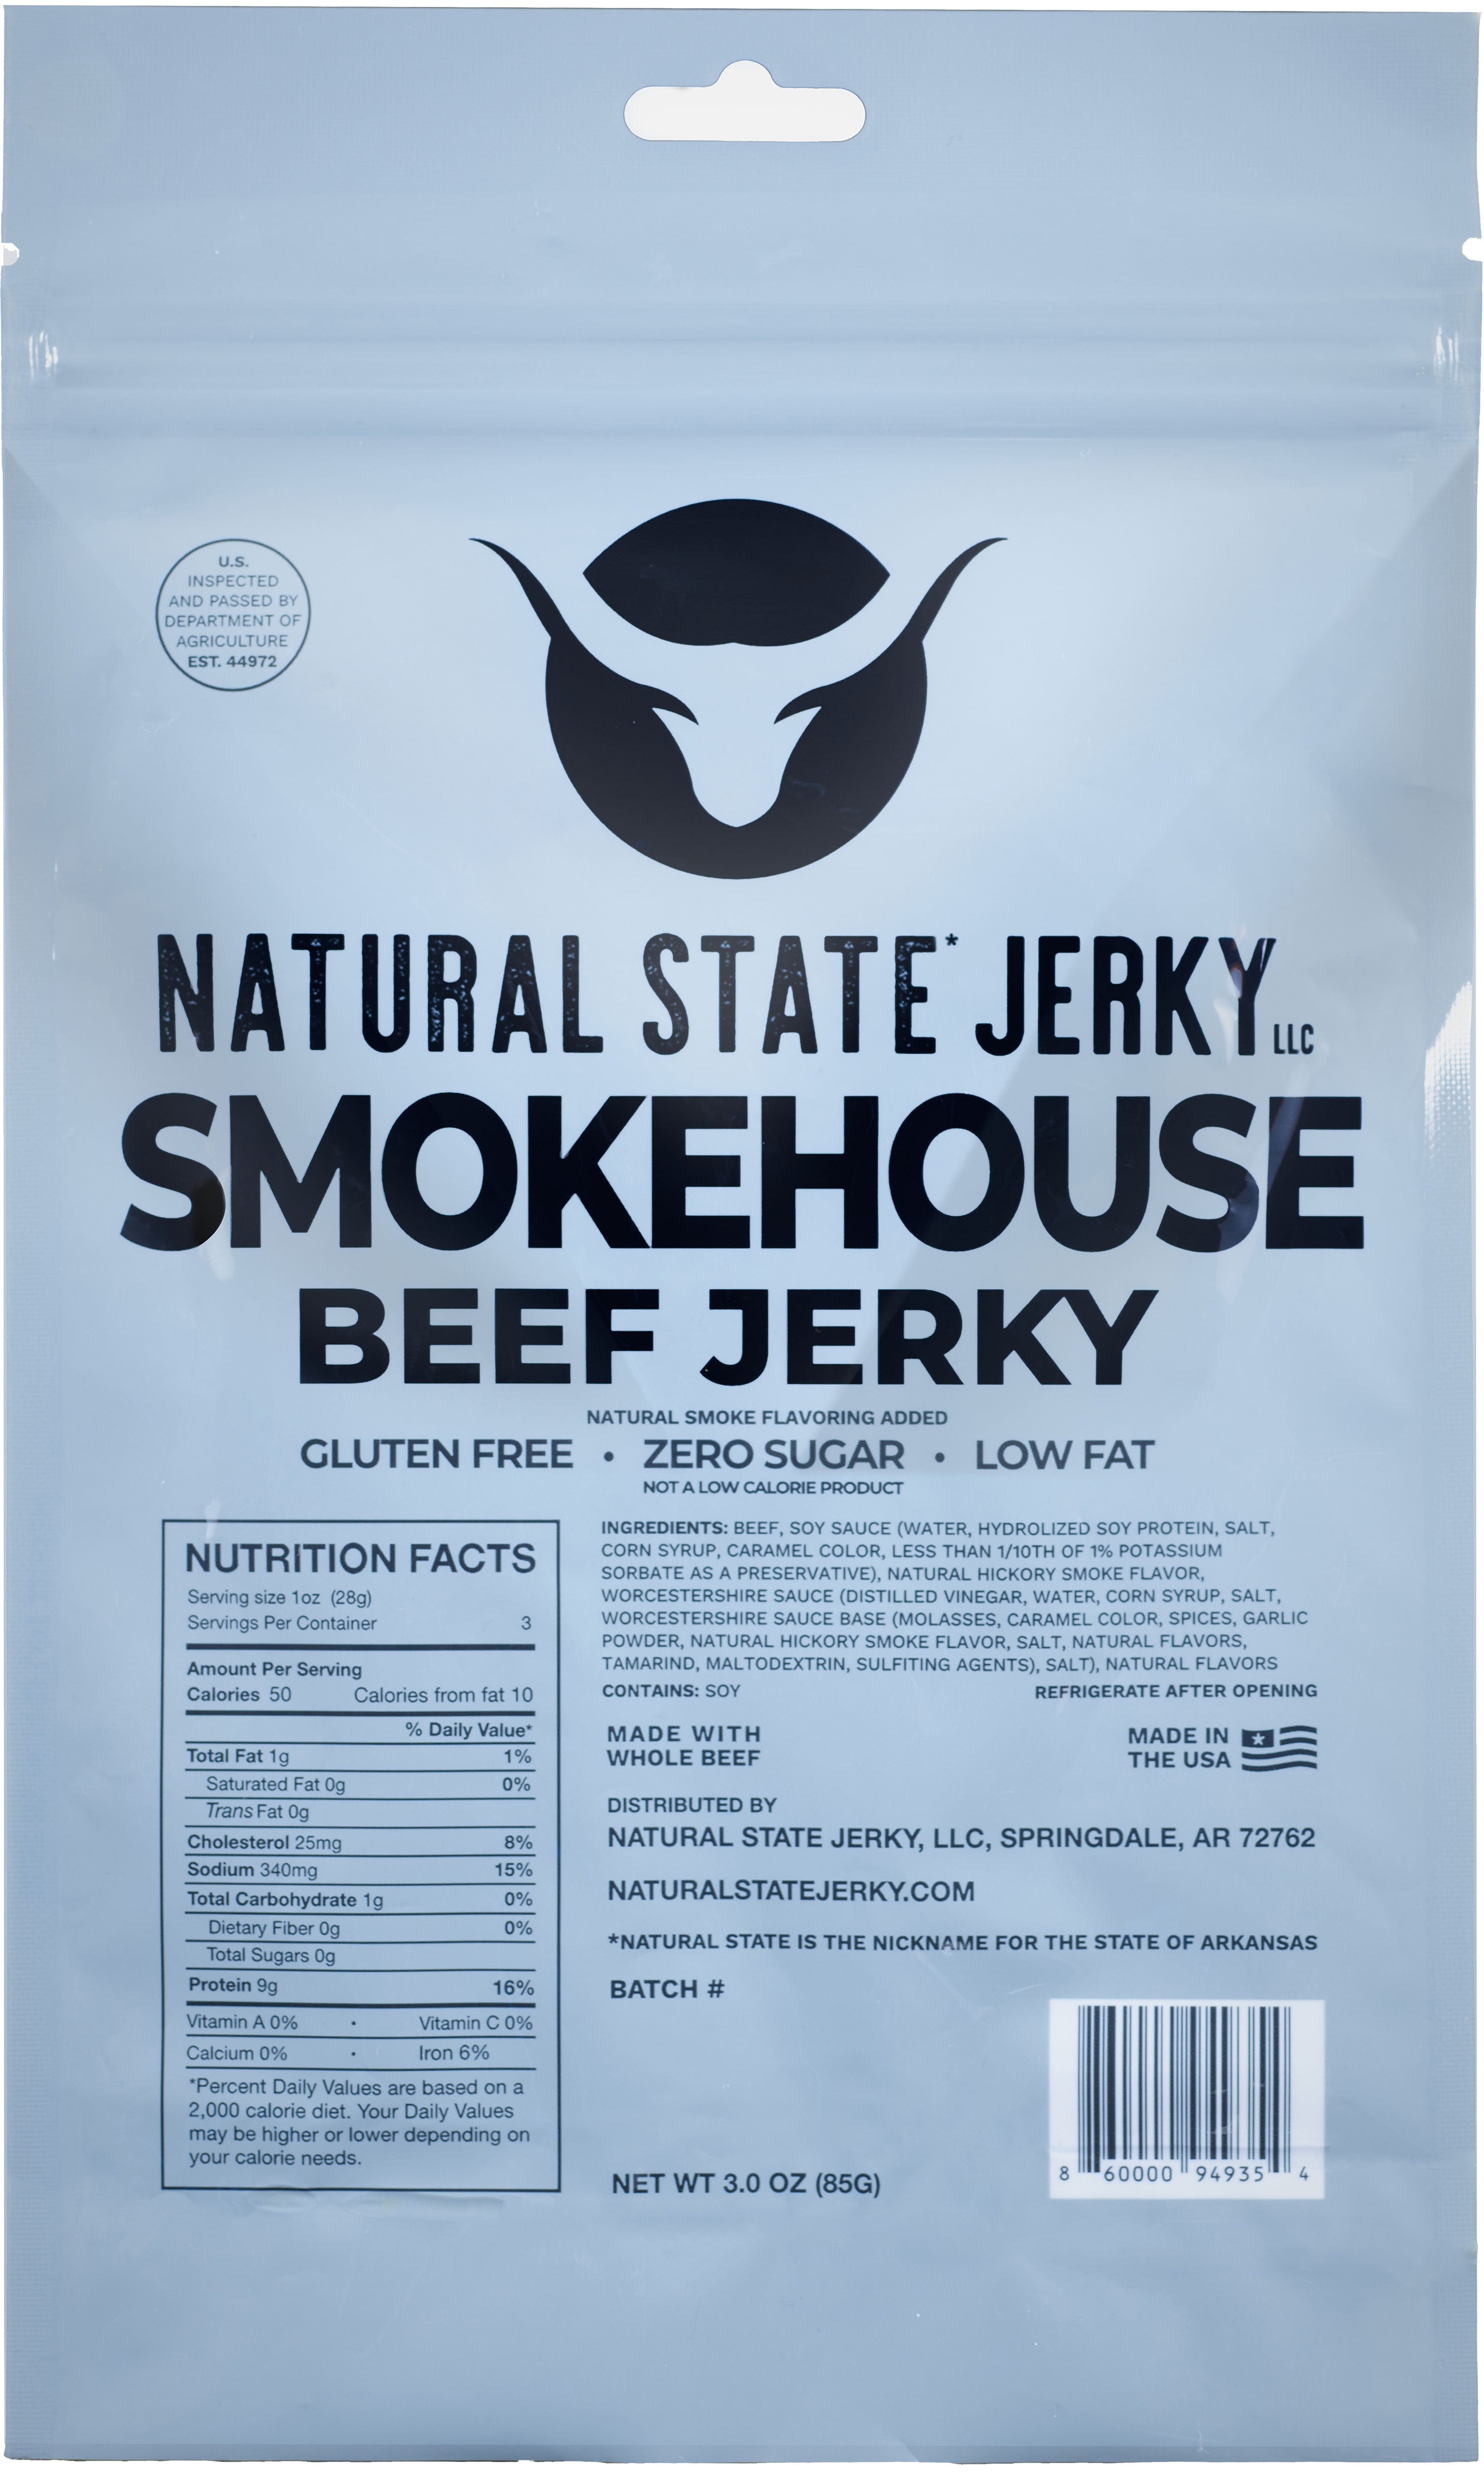 Smoked beef jerky